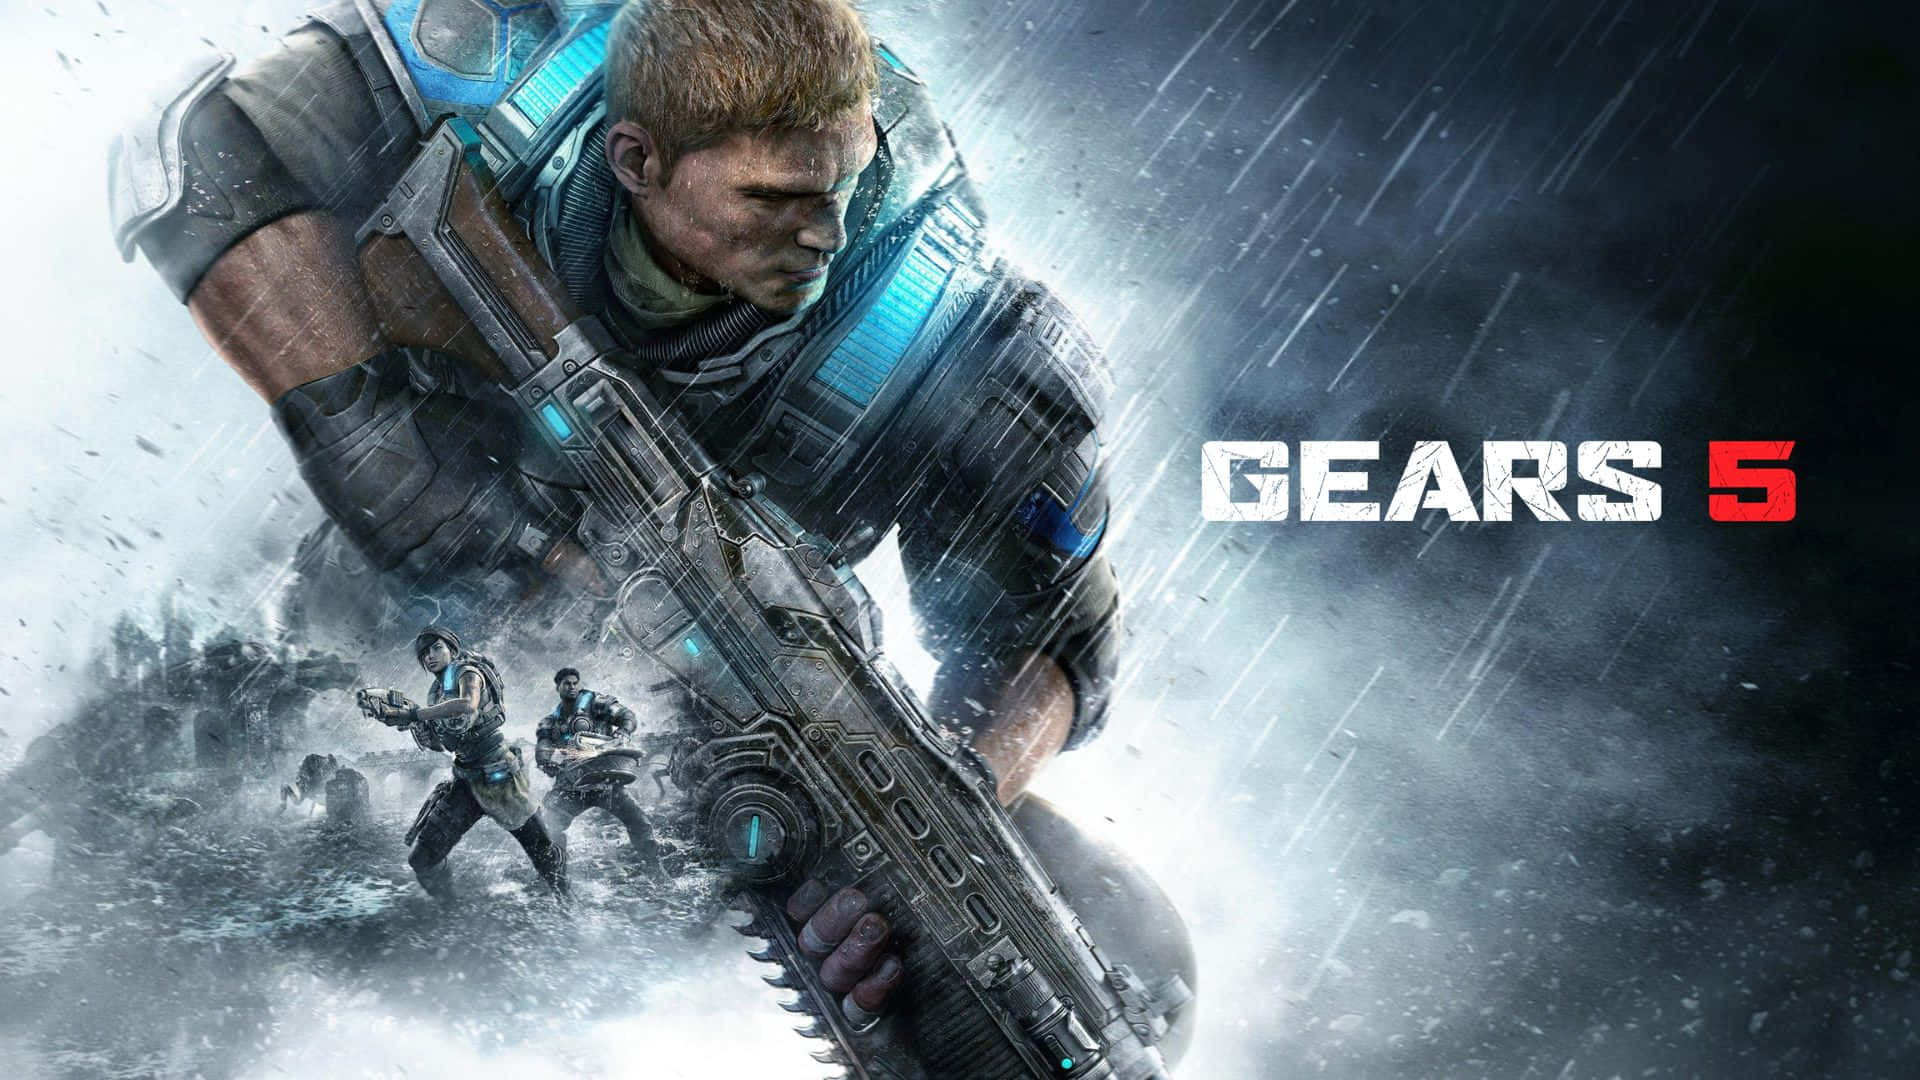 Upptäckden Actionfyllda Äventyret Av Gears Of War 5 I Enastående 1080p-upplösning.